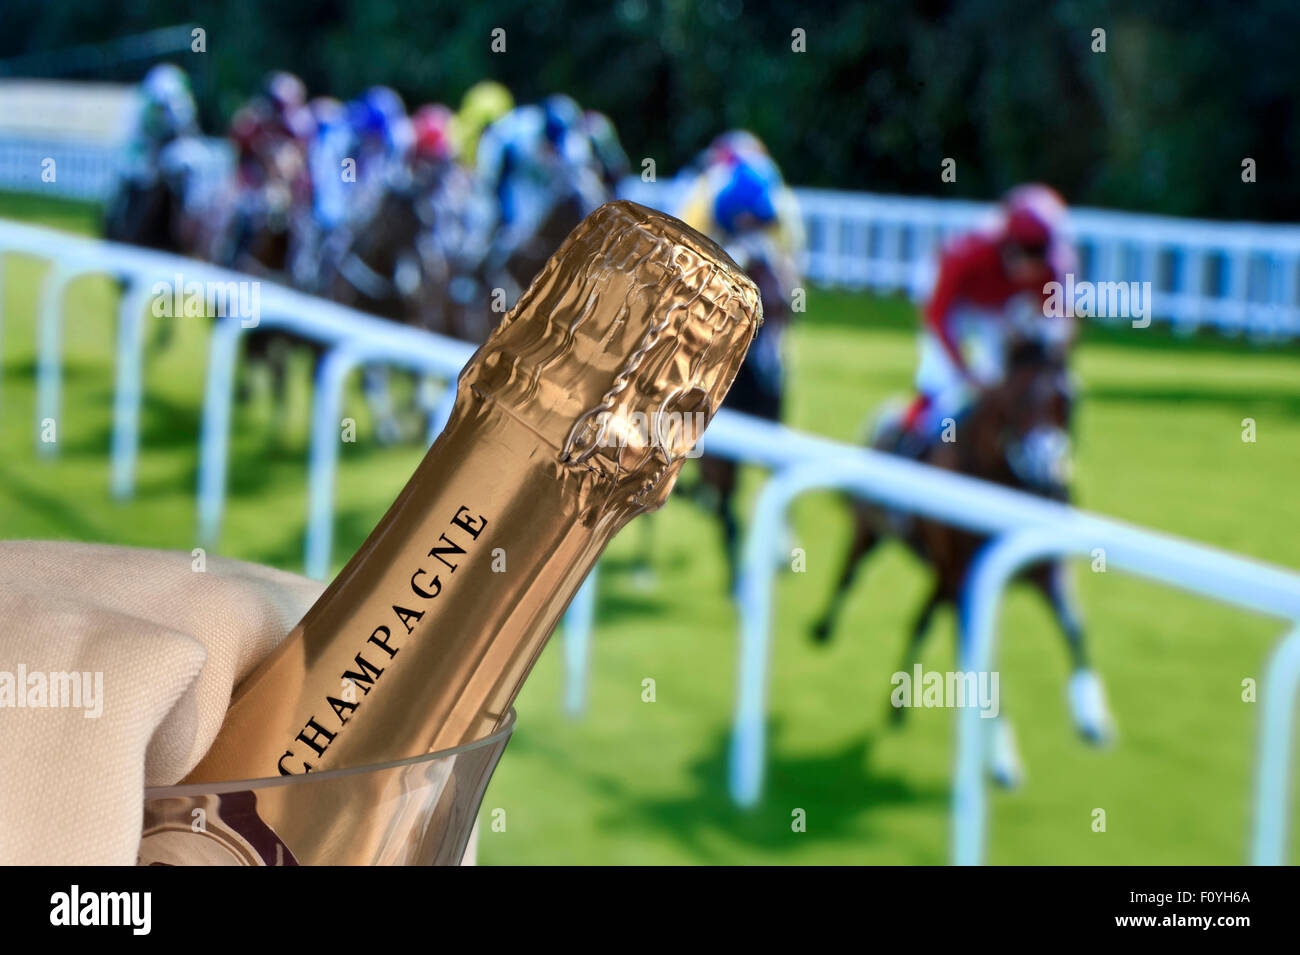 CHAMPAGNER PFERDERENNEN ASCOT RACING Luxus Champagner im Eiskübel Mit Ladies Day Royal Ascot Pferderennen im Hintergrund Ascot Berkshire Großbritannien Stockfoto